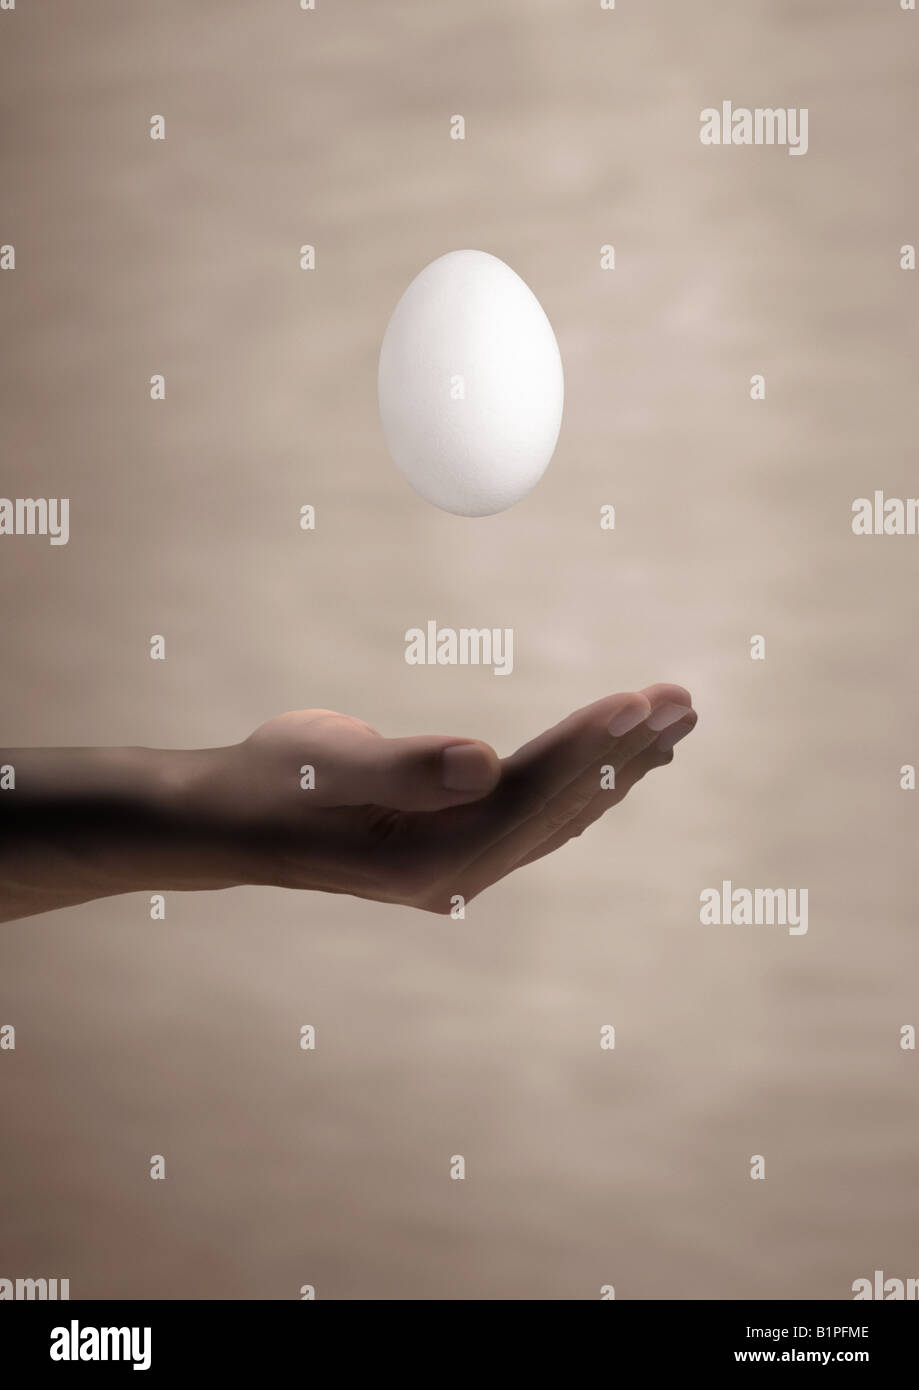 Uovo flottante schwebendes fallendes Ei über einer mano Foto Stock